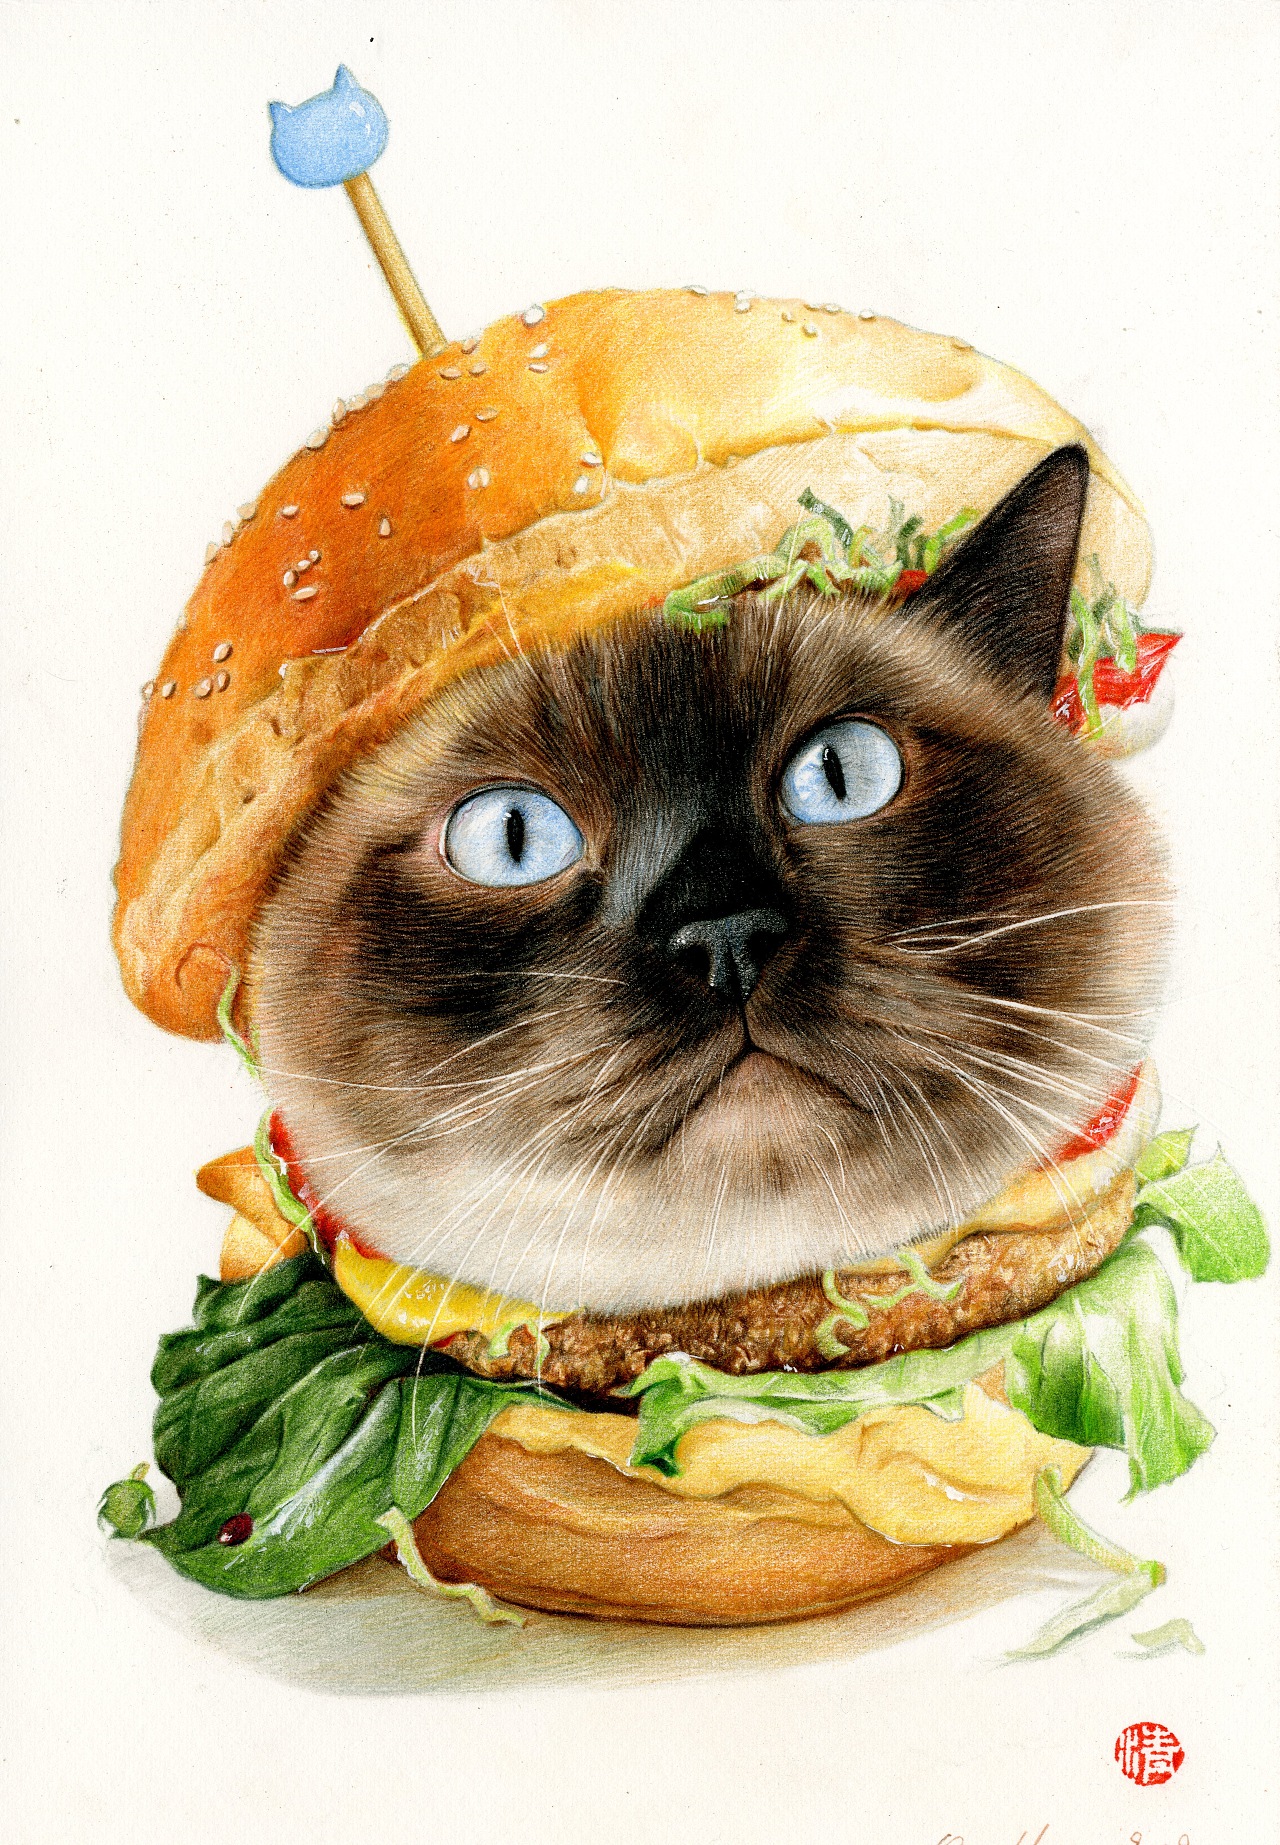 就这样大胖子汉堡在清猫的笔尖下就蜕变出来了。<br>顺便给清猫打个广告，如果也想要给自己的爱宠定制画像的，可以微博@清猫绘，联系大大。